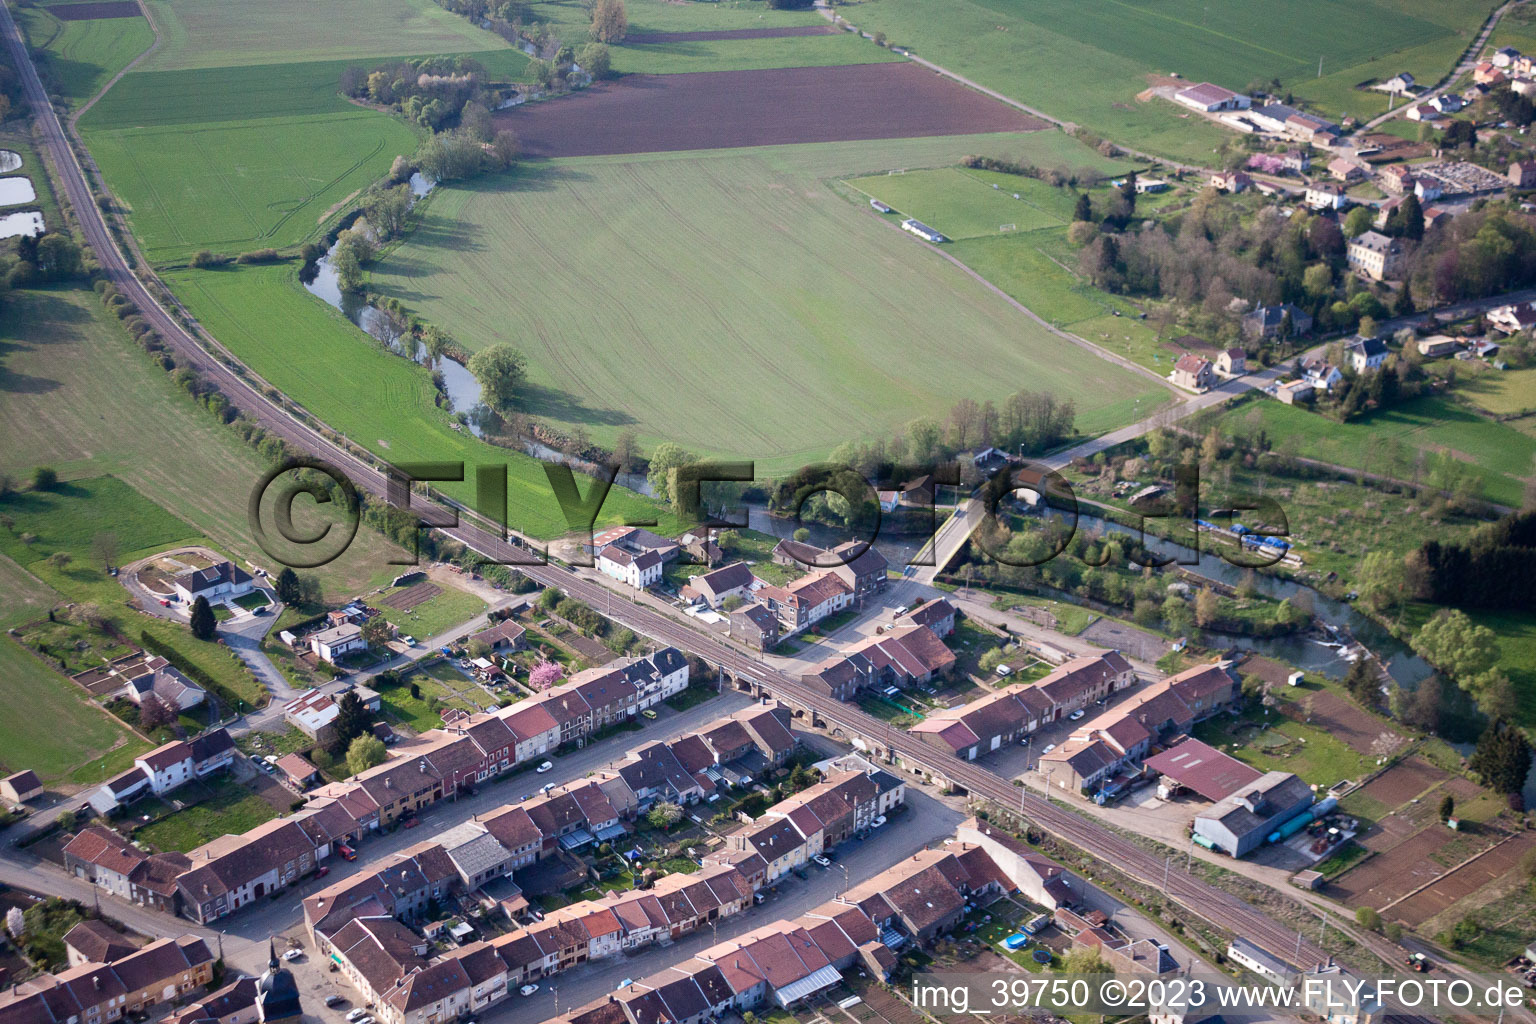 Vue aérienne de Charency-Vezin dans le département Meurthe et Moselle, France